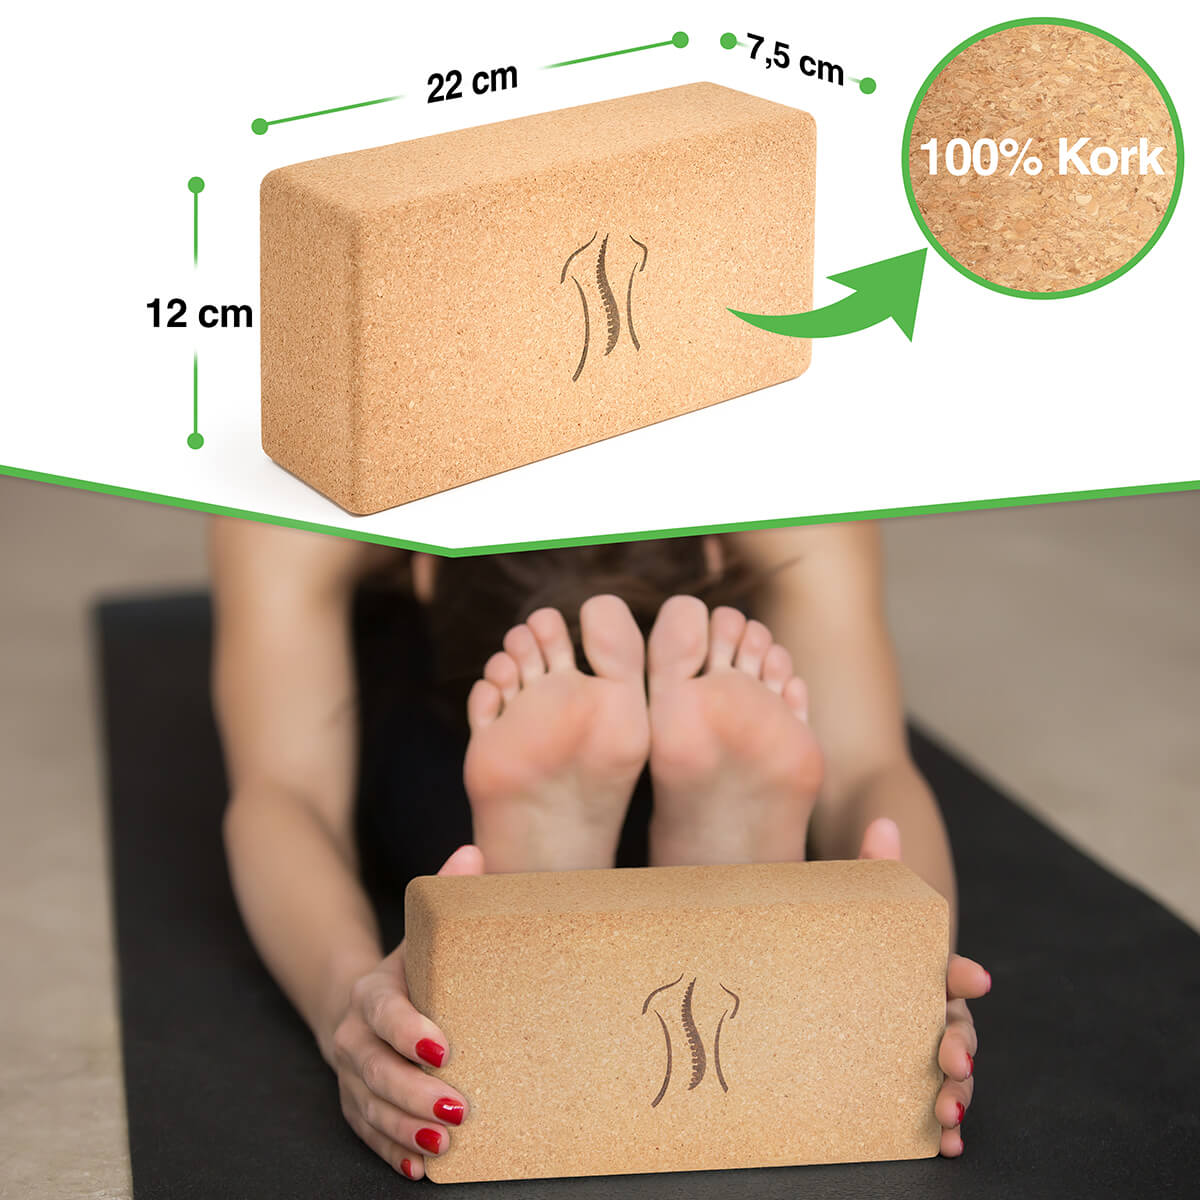 Lean Cork Yoga Block- 2 Pack